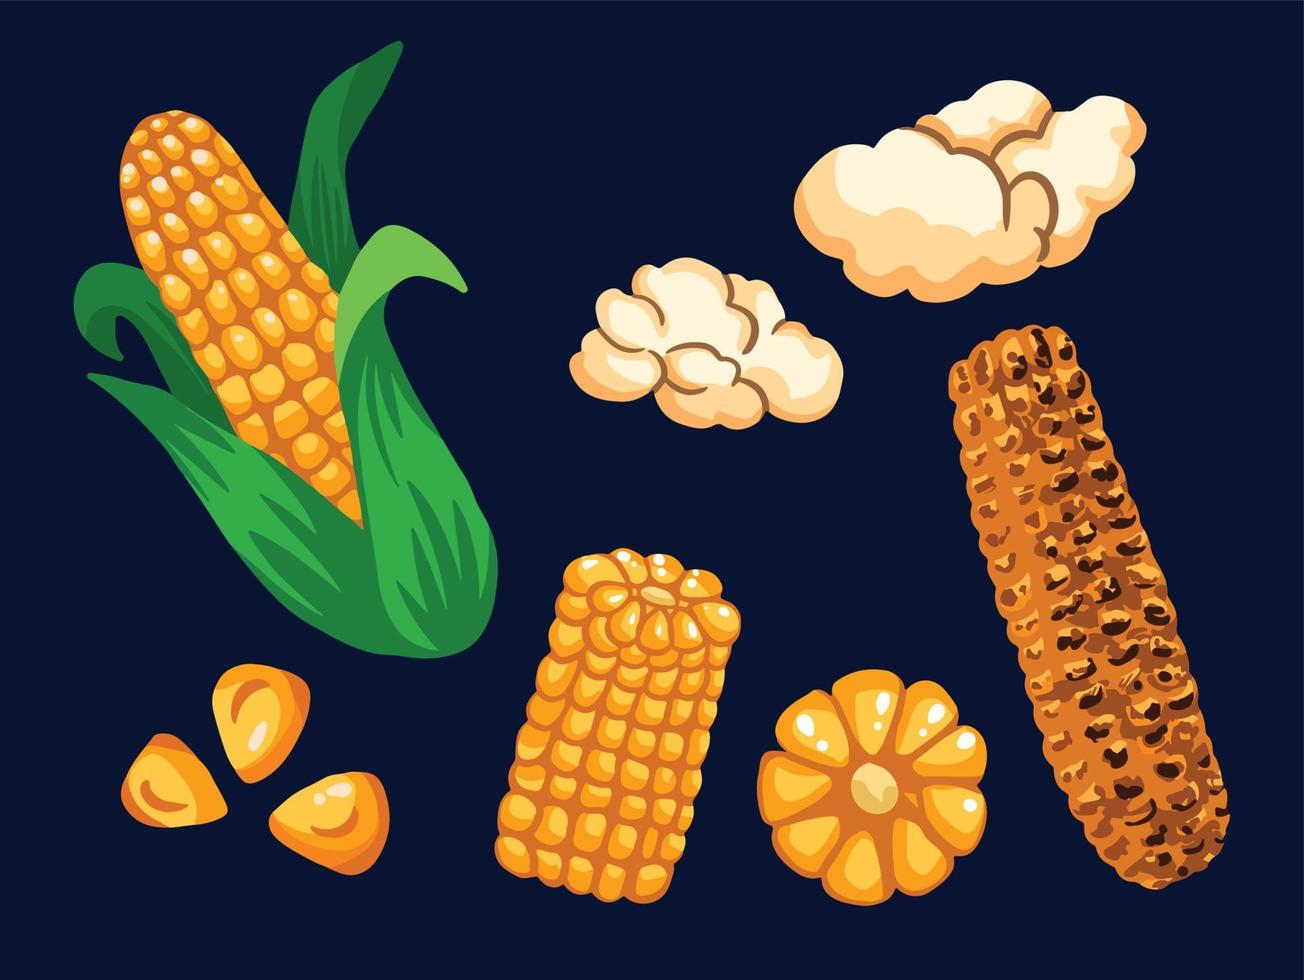 maïs verzameling reeks van zaad, knal maïs, en geroosterd maïs. lekker zomer tropisch voedsel vector illustratie met vlak hand- getrokken kunst stijl.